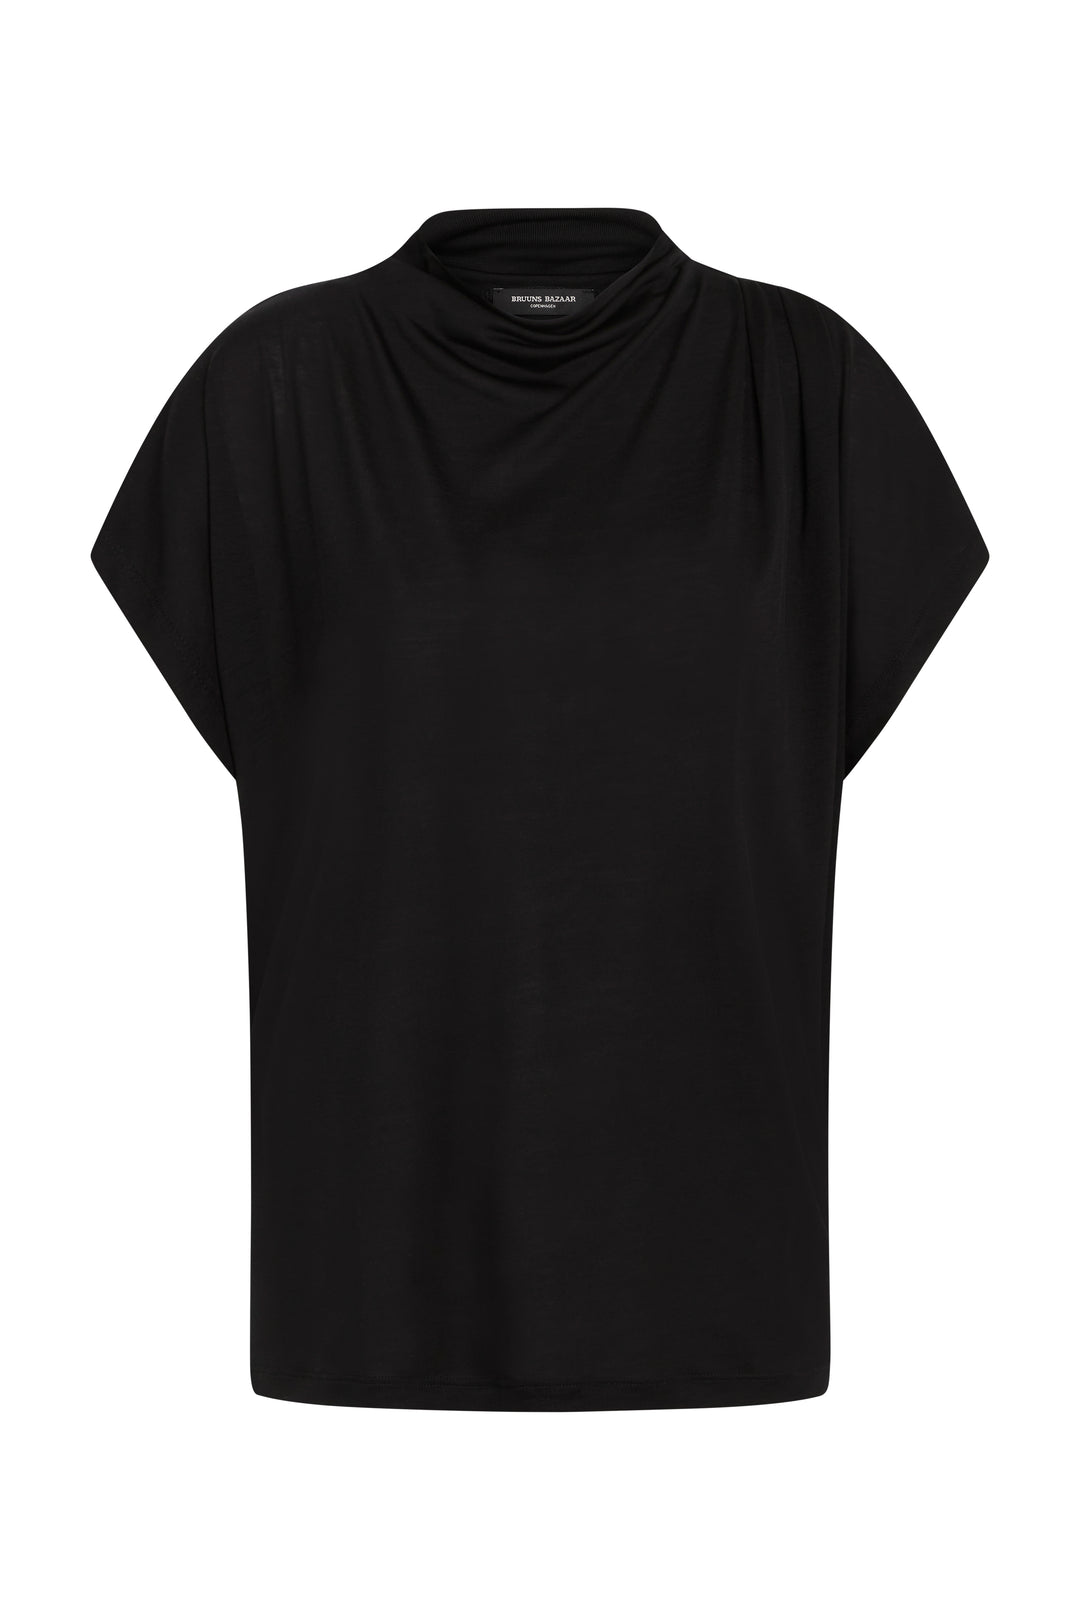 Bruuns Bazaar Women KatkaBBGinna blouse T-shirts Black